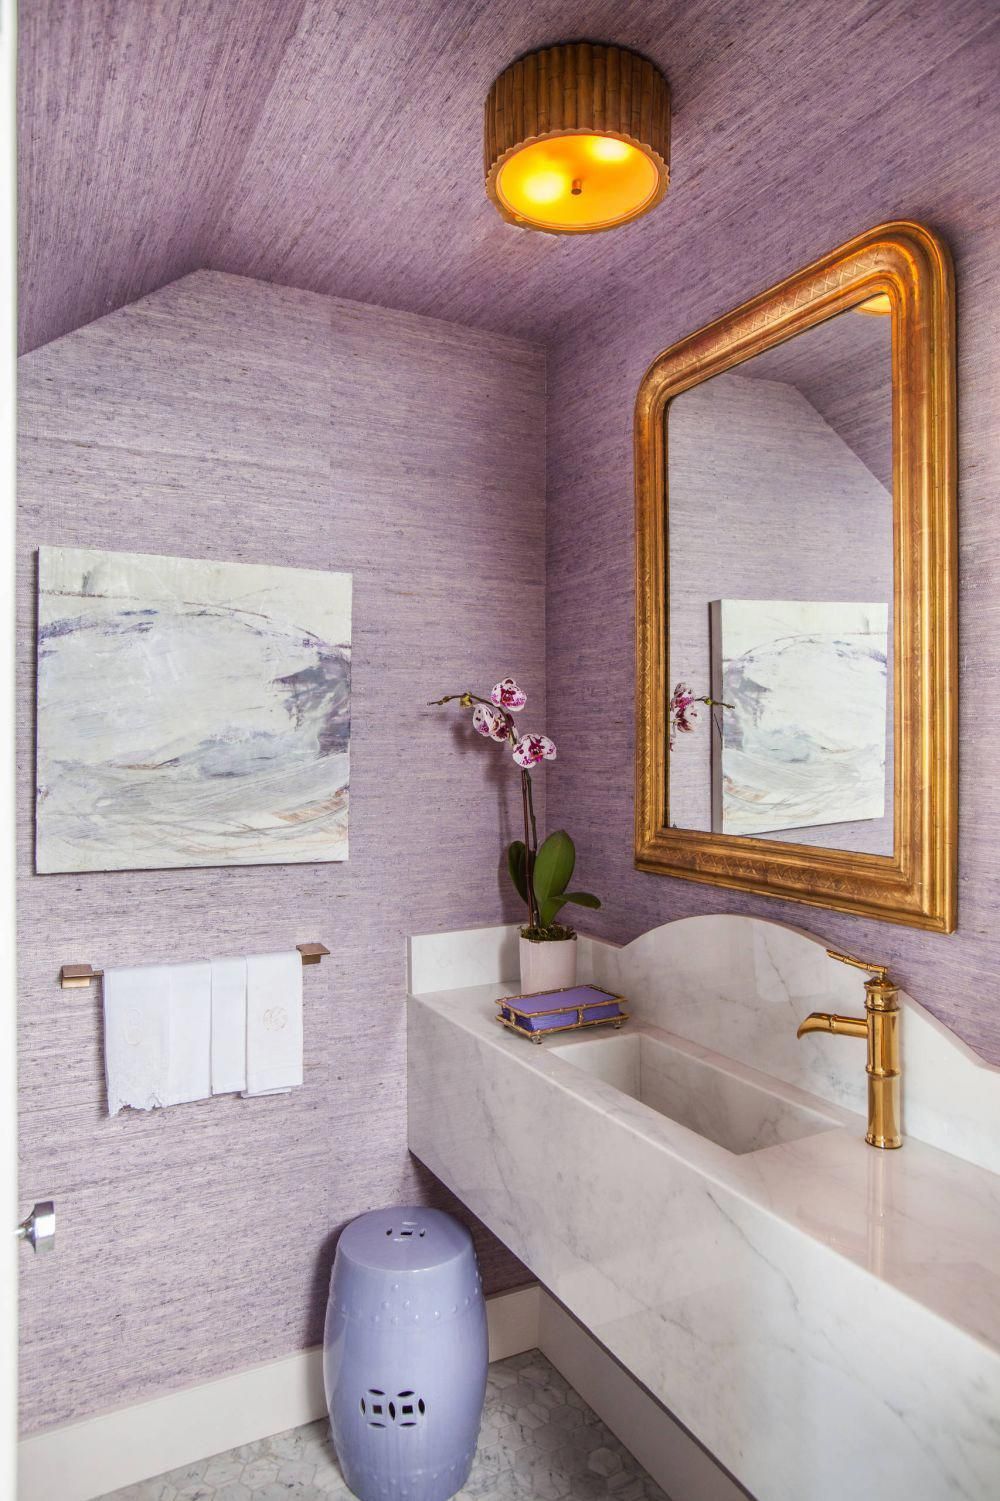 Attractive lavender bath